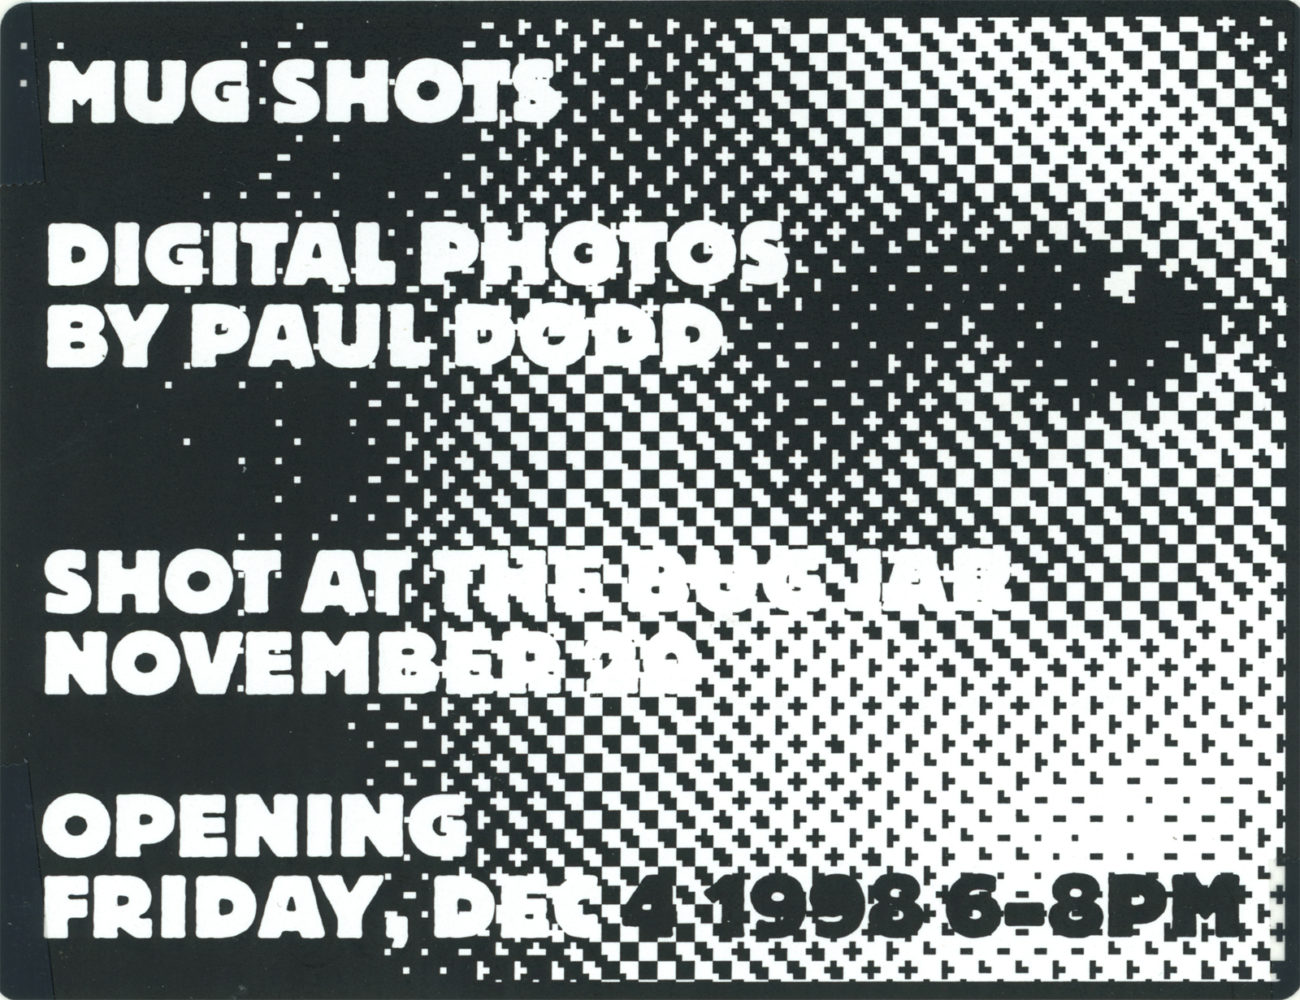 Invitation toPaul Dodd Mug Shot Showat Bug Jar 1998